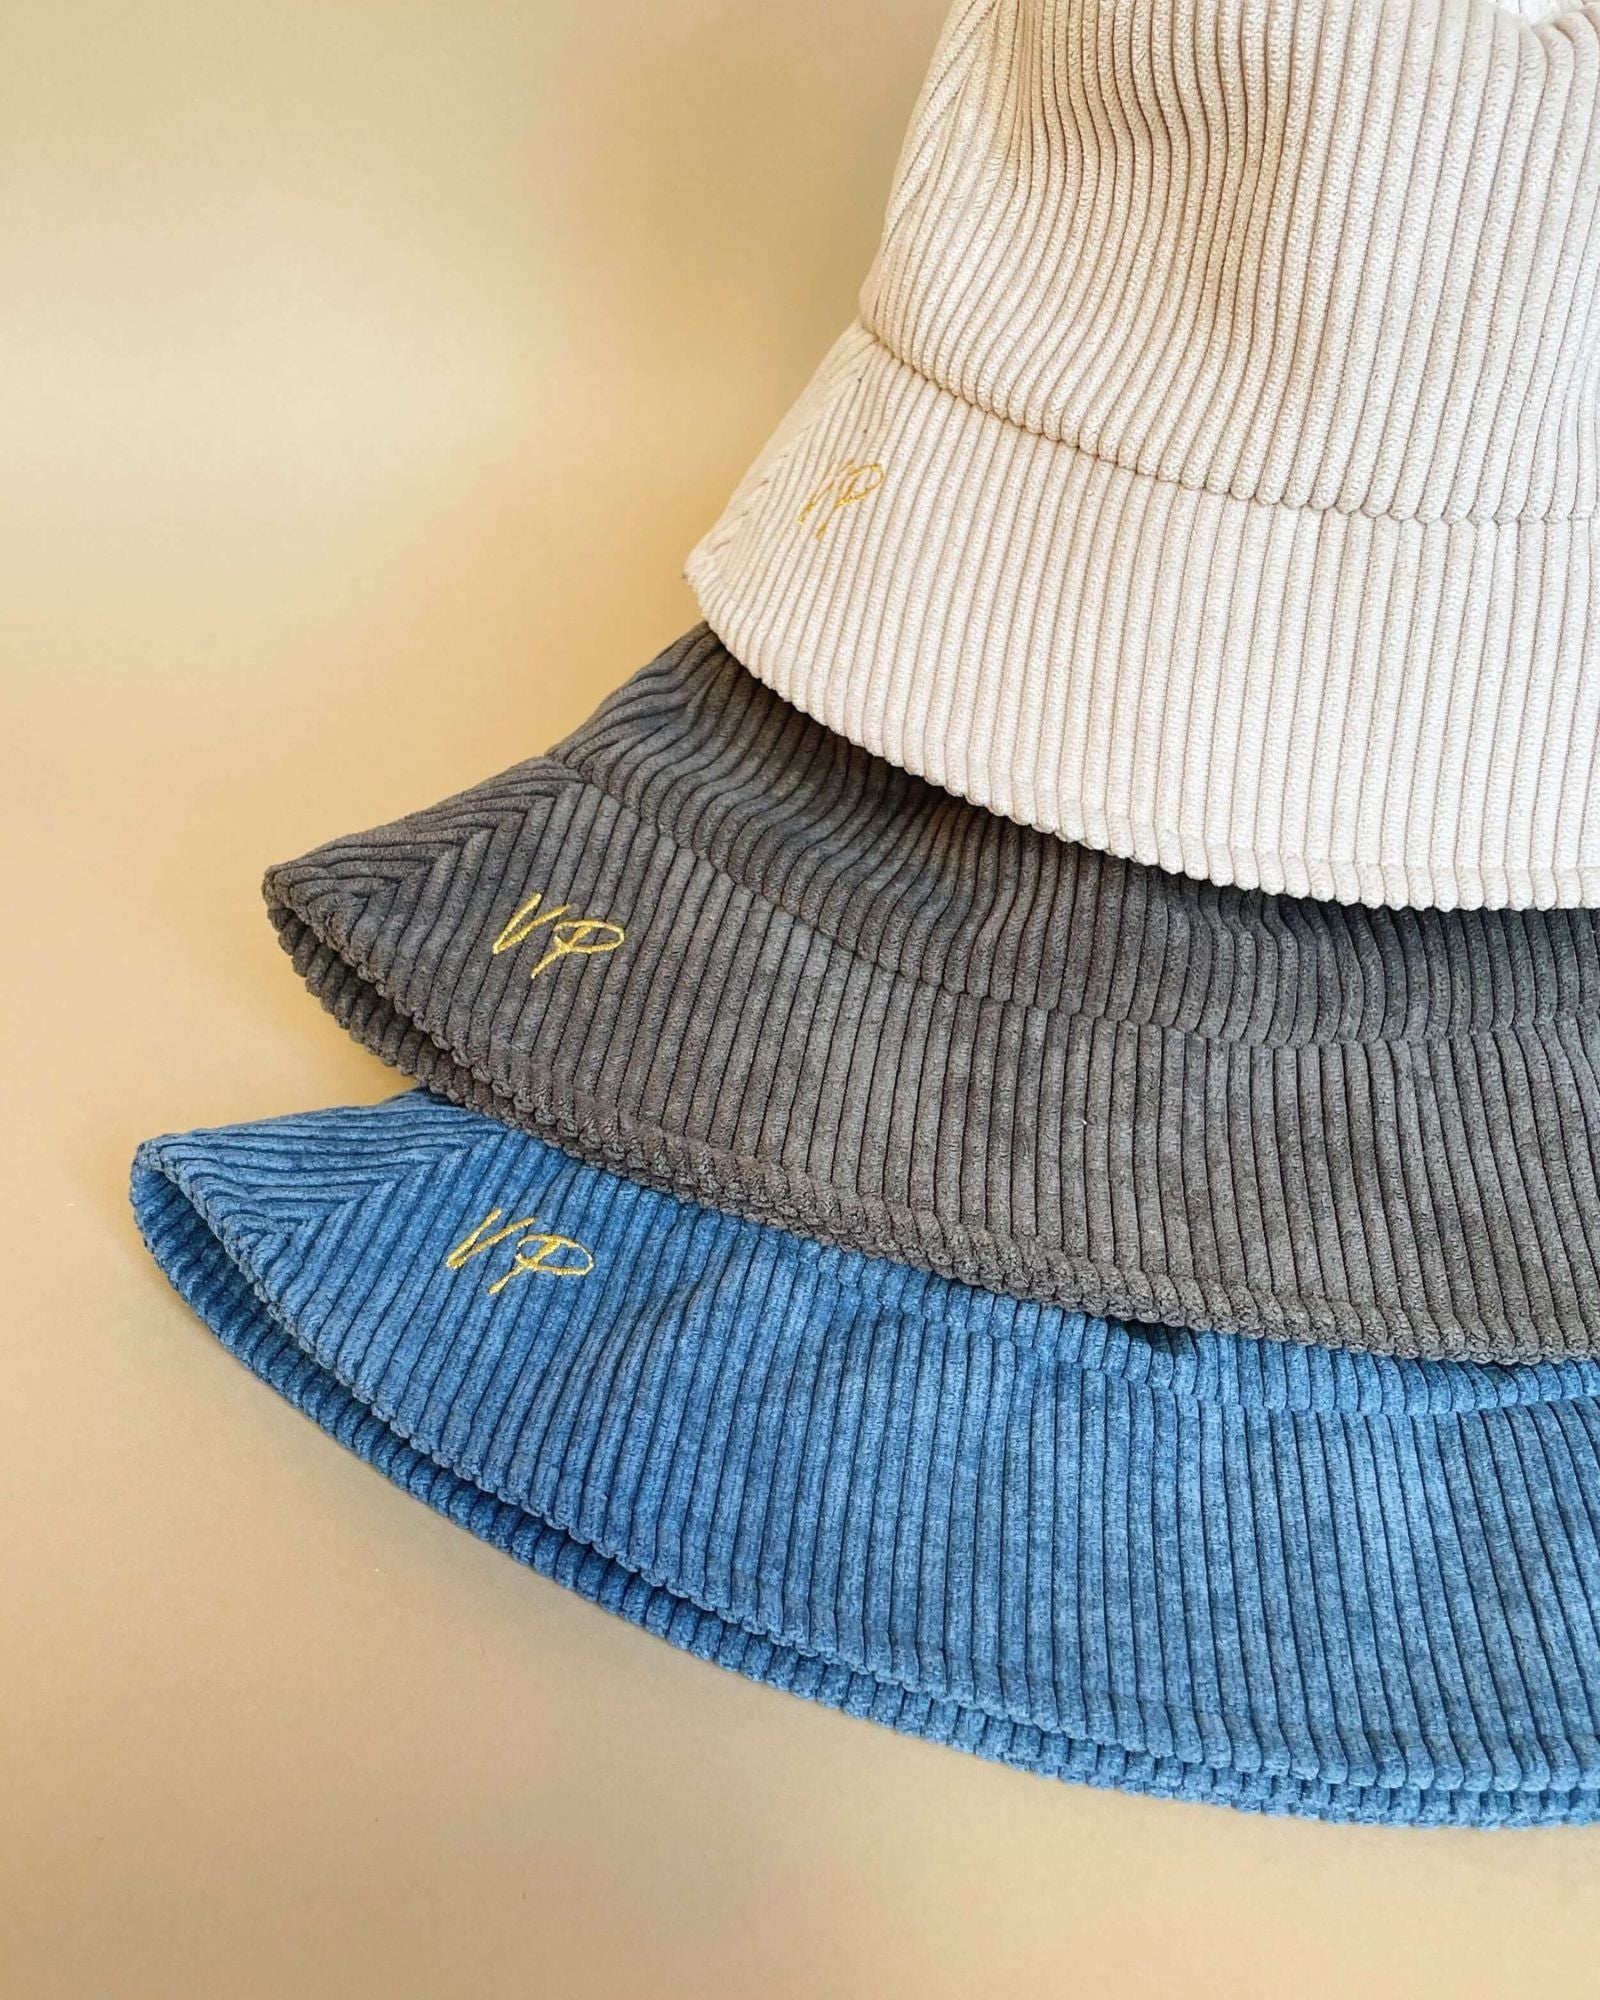 VAN PALMA - PACO Bucket Hat | Grey